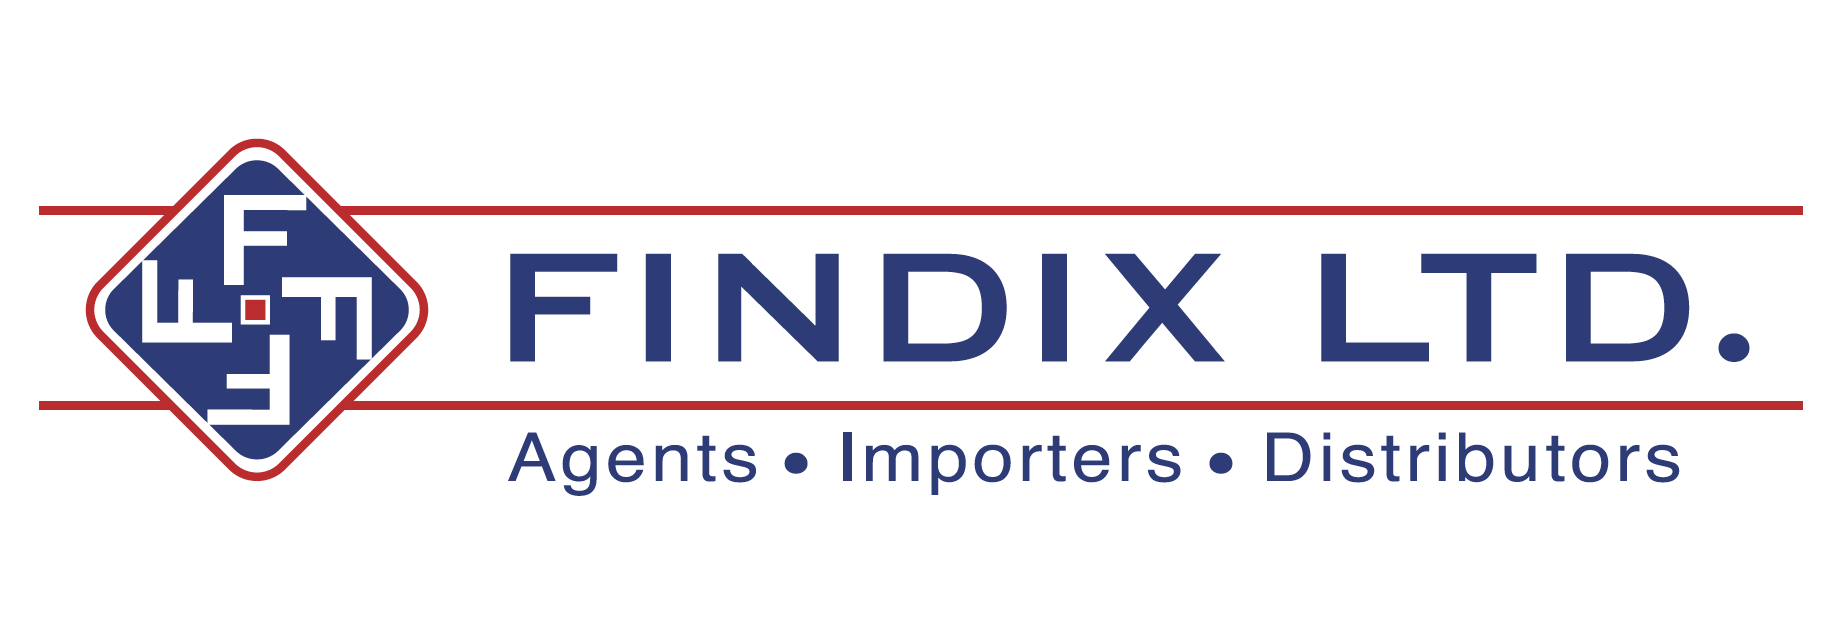 FINDIX LTD